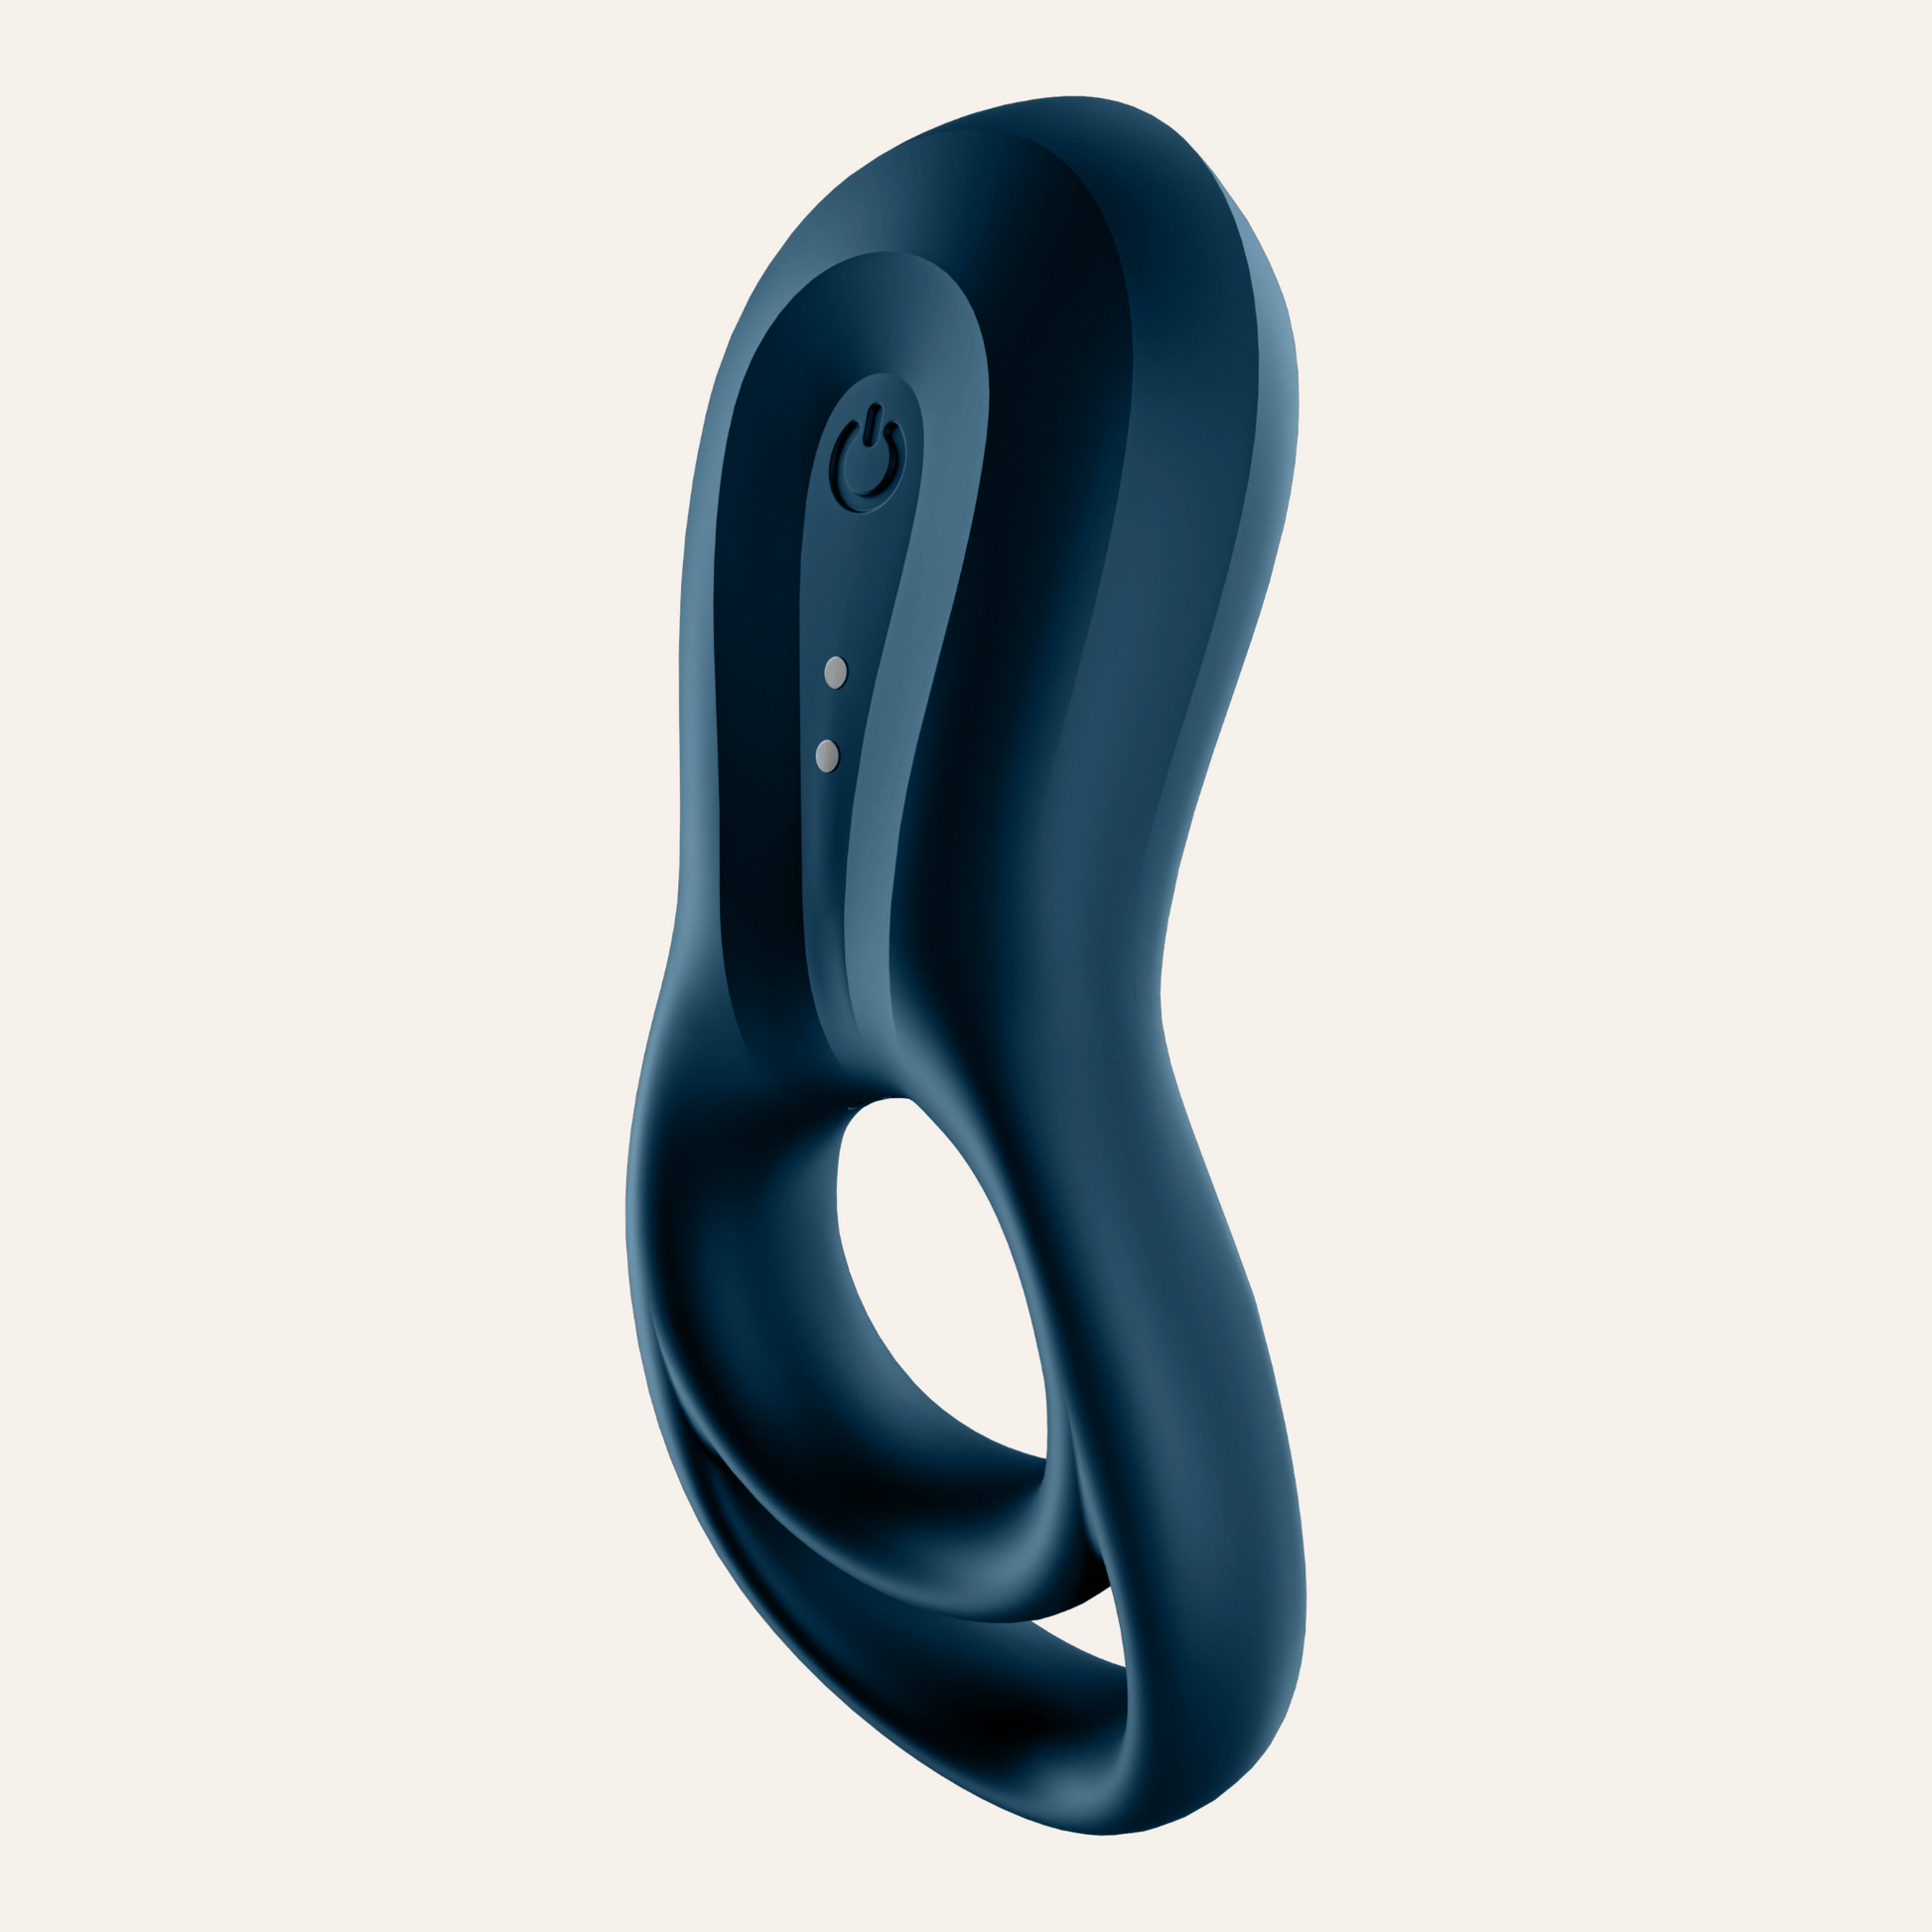 Vibromasseur annulaire 'Epic Duo' de Satisfyer en bleu profond, intégrant Bluetooth pour une commande à distance via l'application, offert par Oh My God'Z pour un plaisir à la pointe de la technologie.